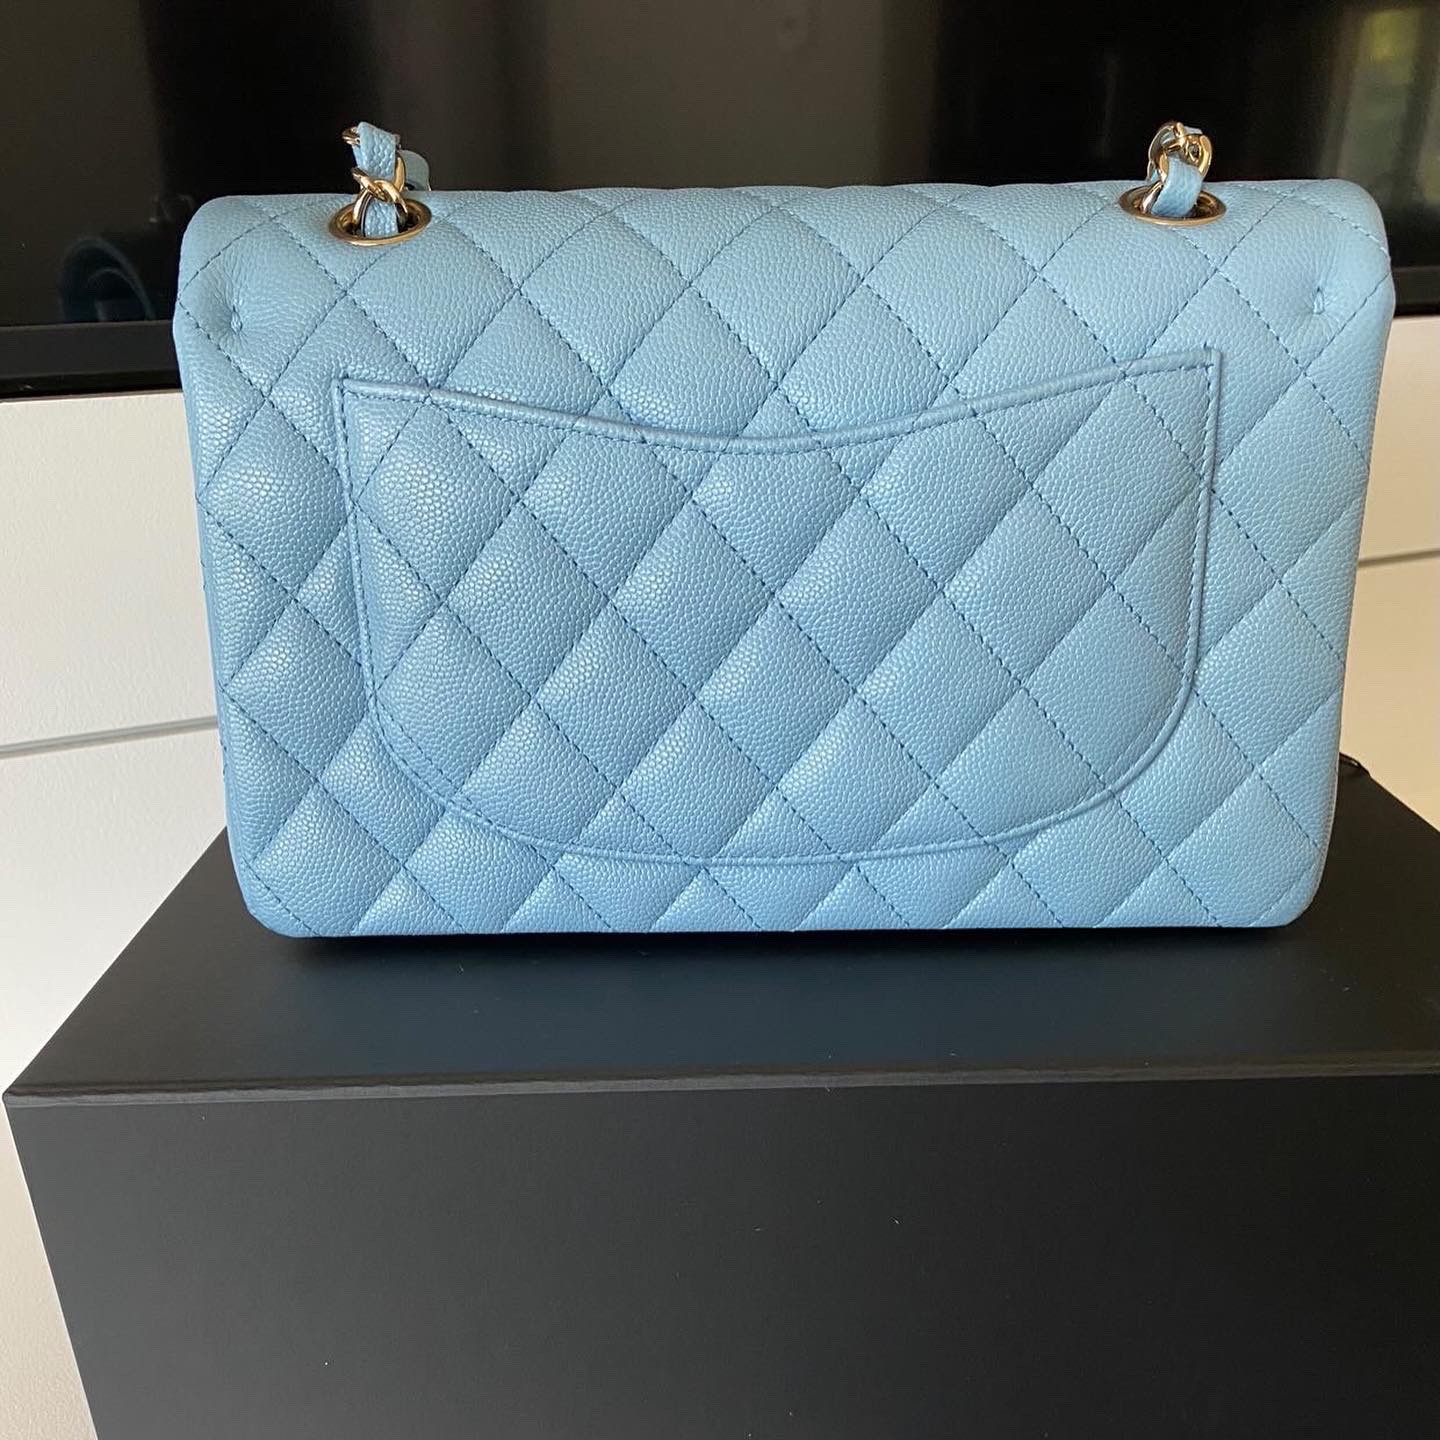 blue mini chanel bag authentic